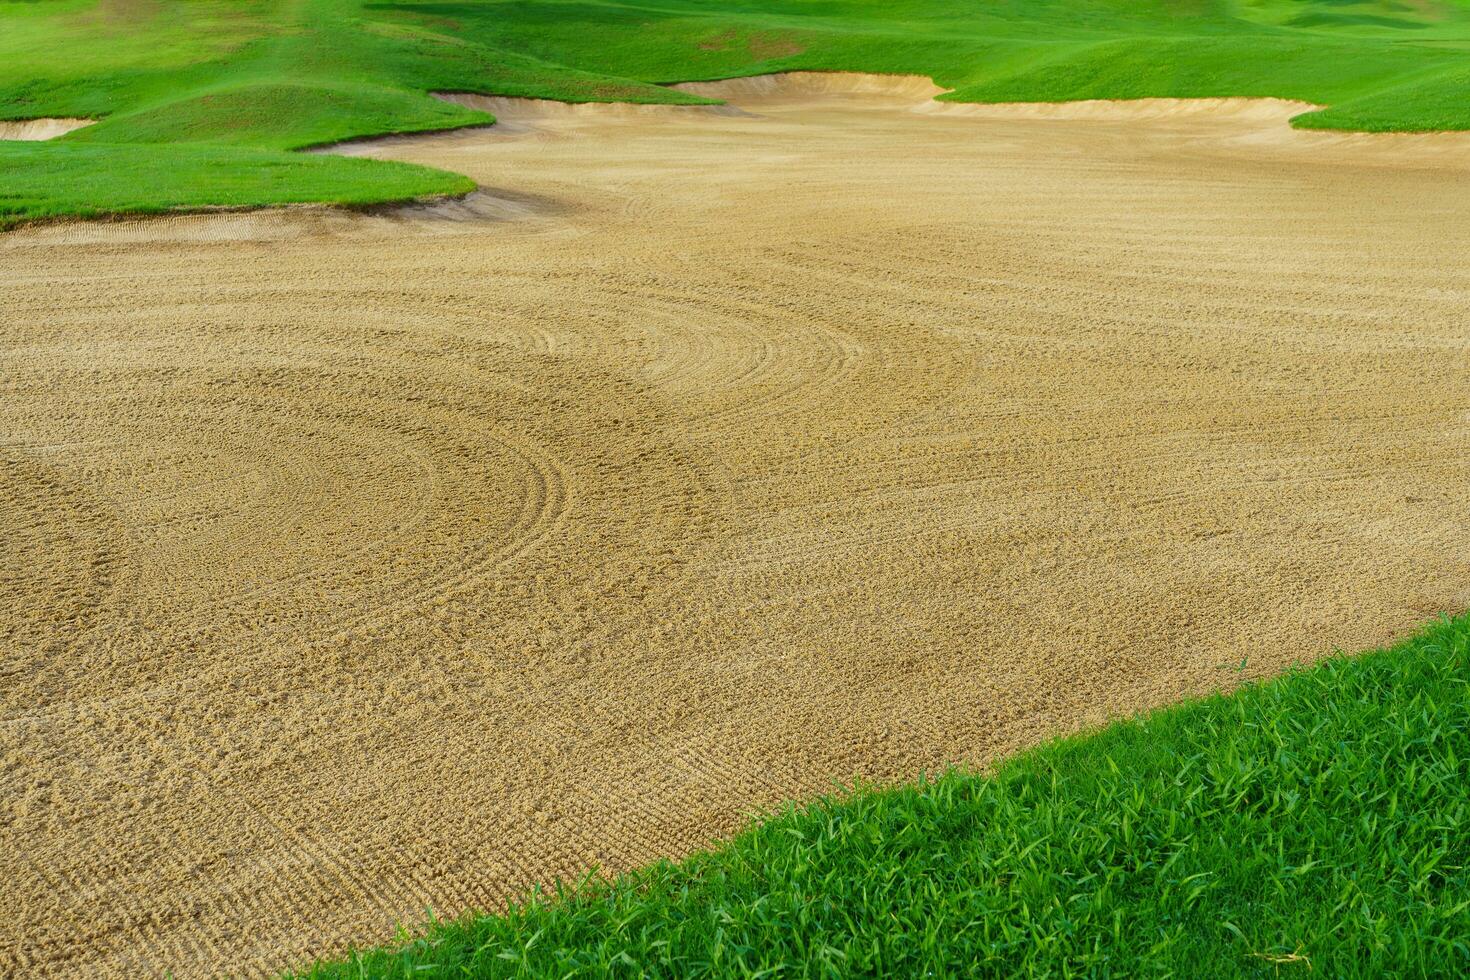 le golf cours le sable fosse soutes, vert herbe alentours le magnifique le sable des trous est un de le plus difficile obstacles pour golfeurs et ajoute à le beauté de le le golf cours. photo